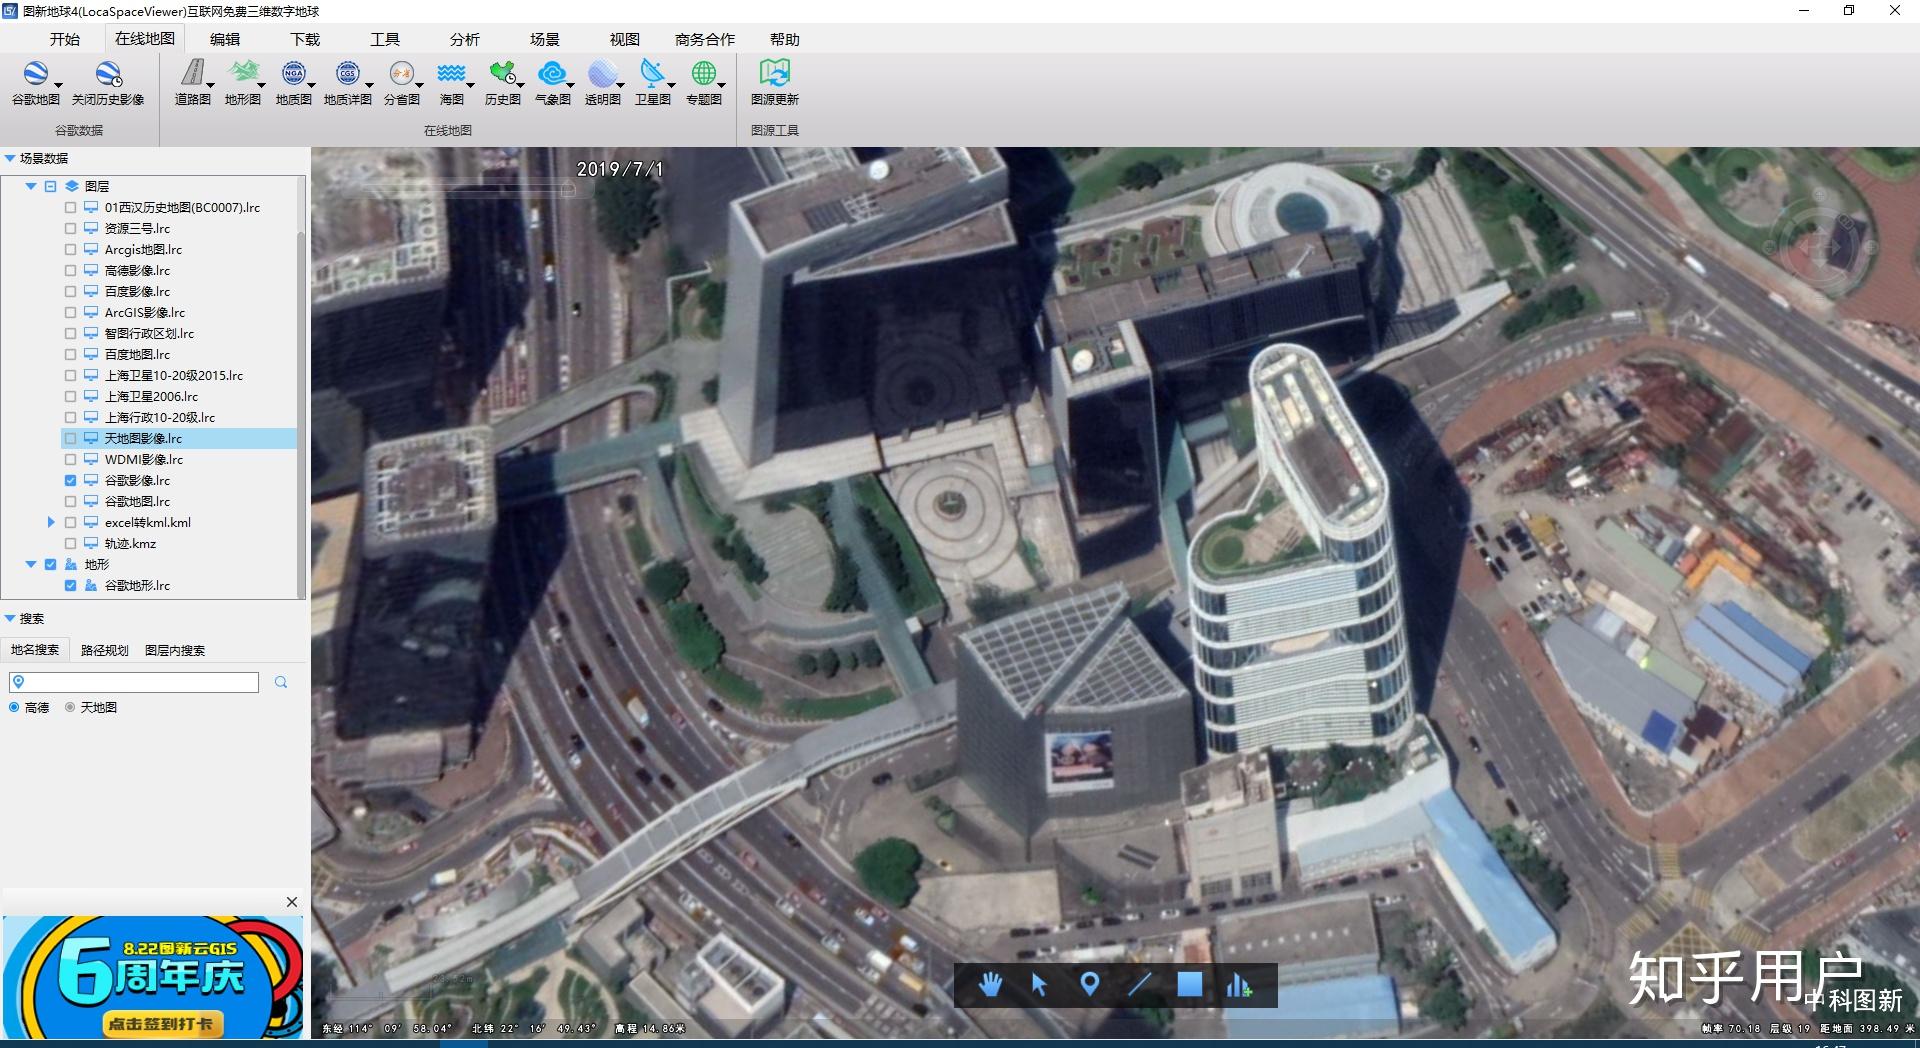 照片定位修改器 - 虚拟图片GPS地图位置 for iOS (iPhone/iPad) - Free Download at AppPure